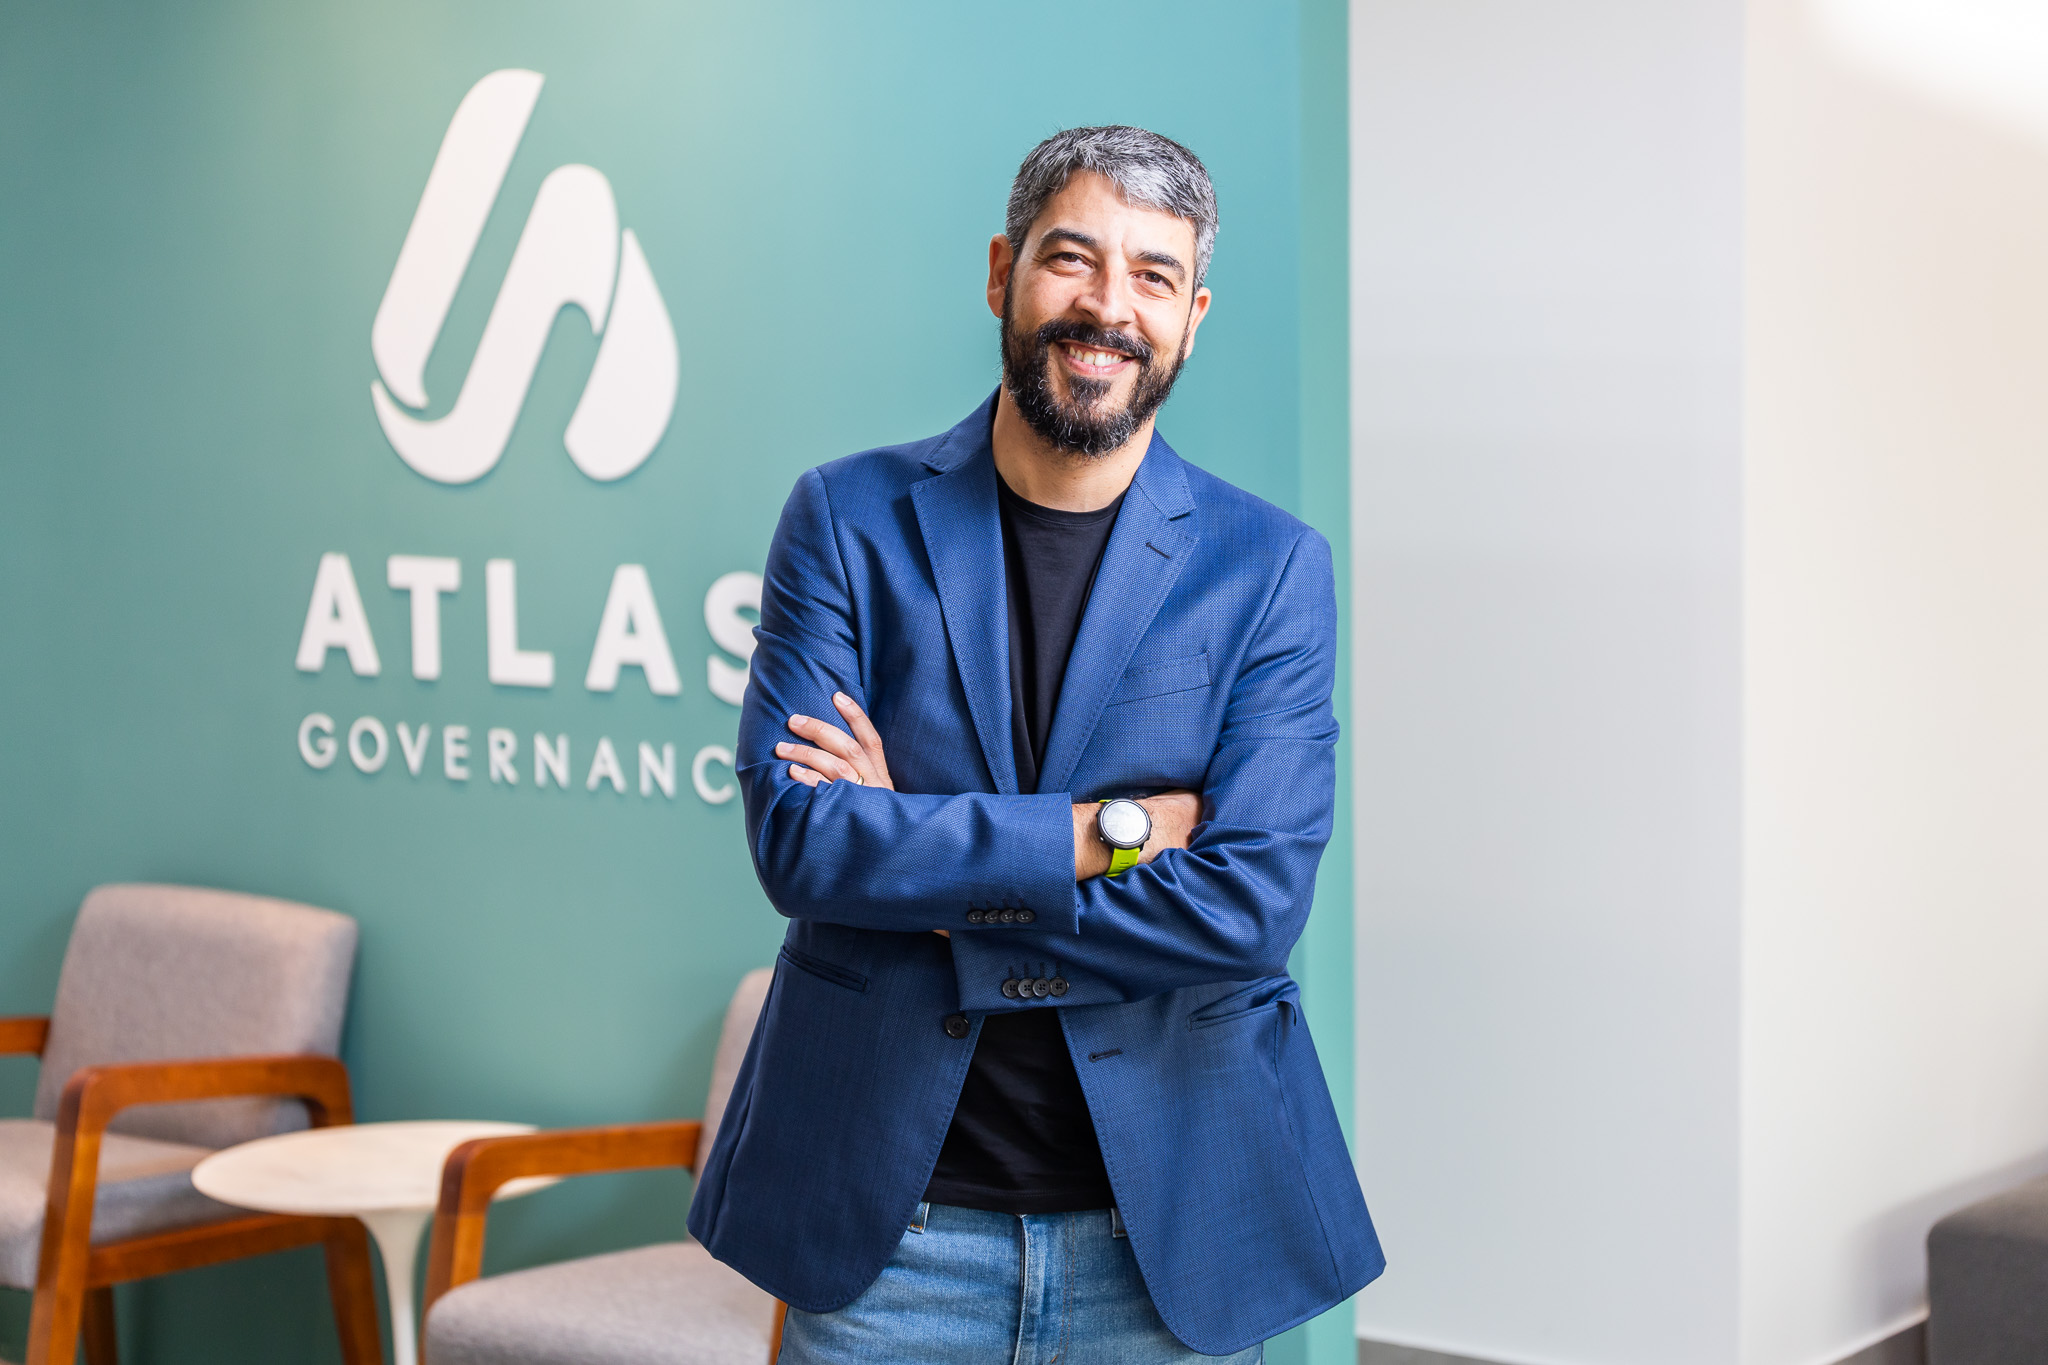 Fundador da startup Atlas Governance, Eduardo Carone.